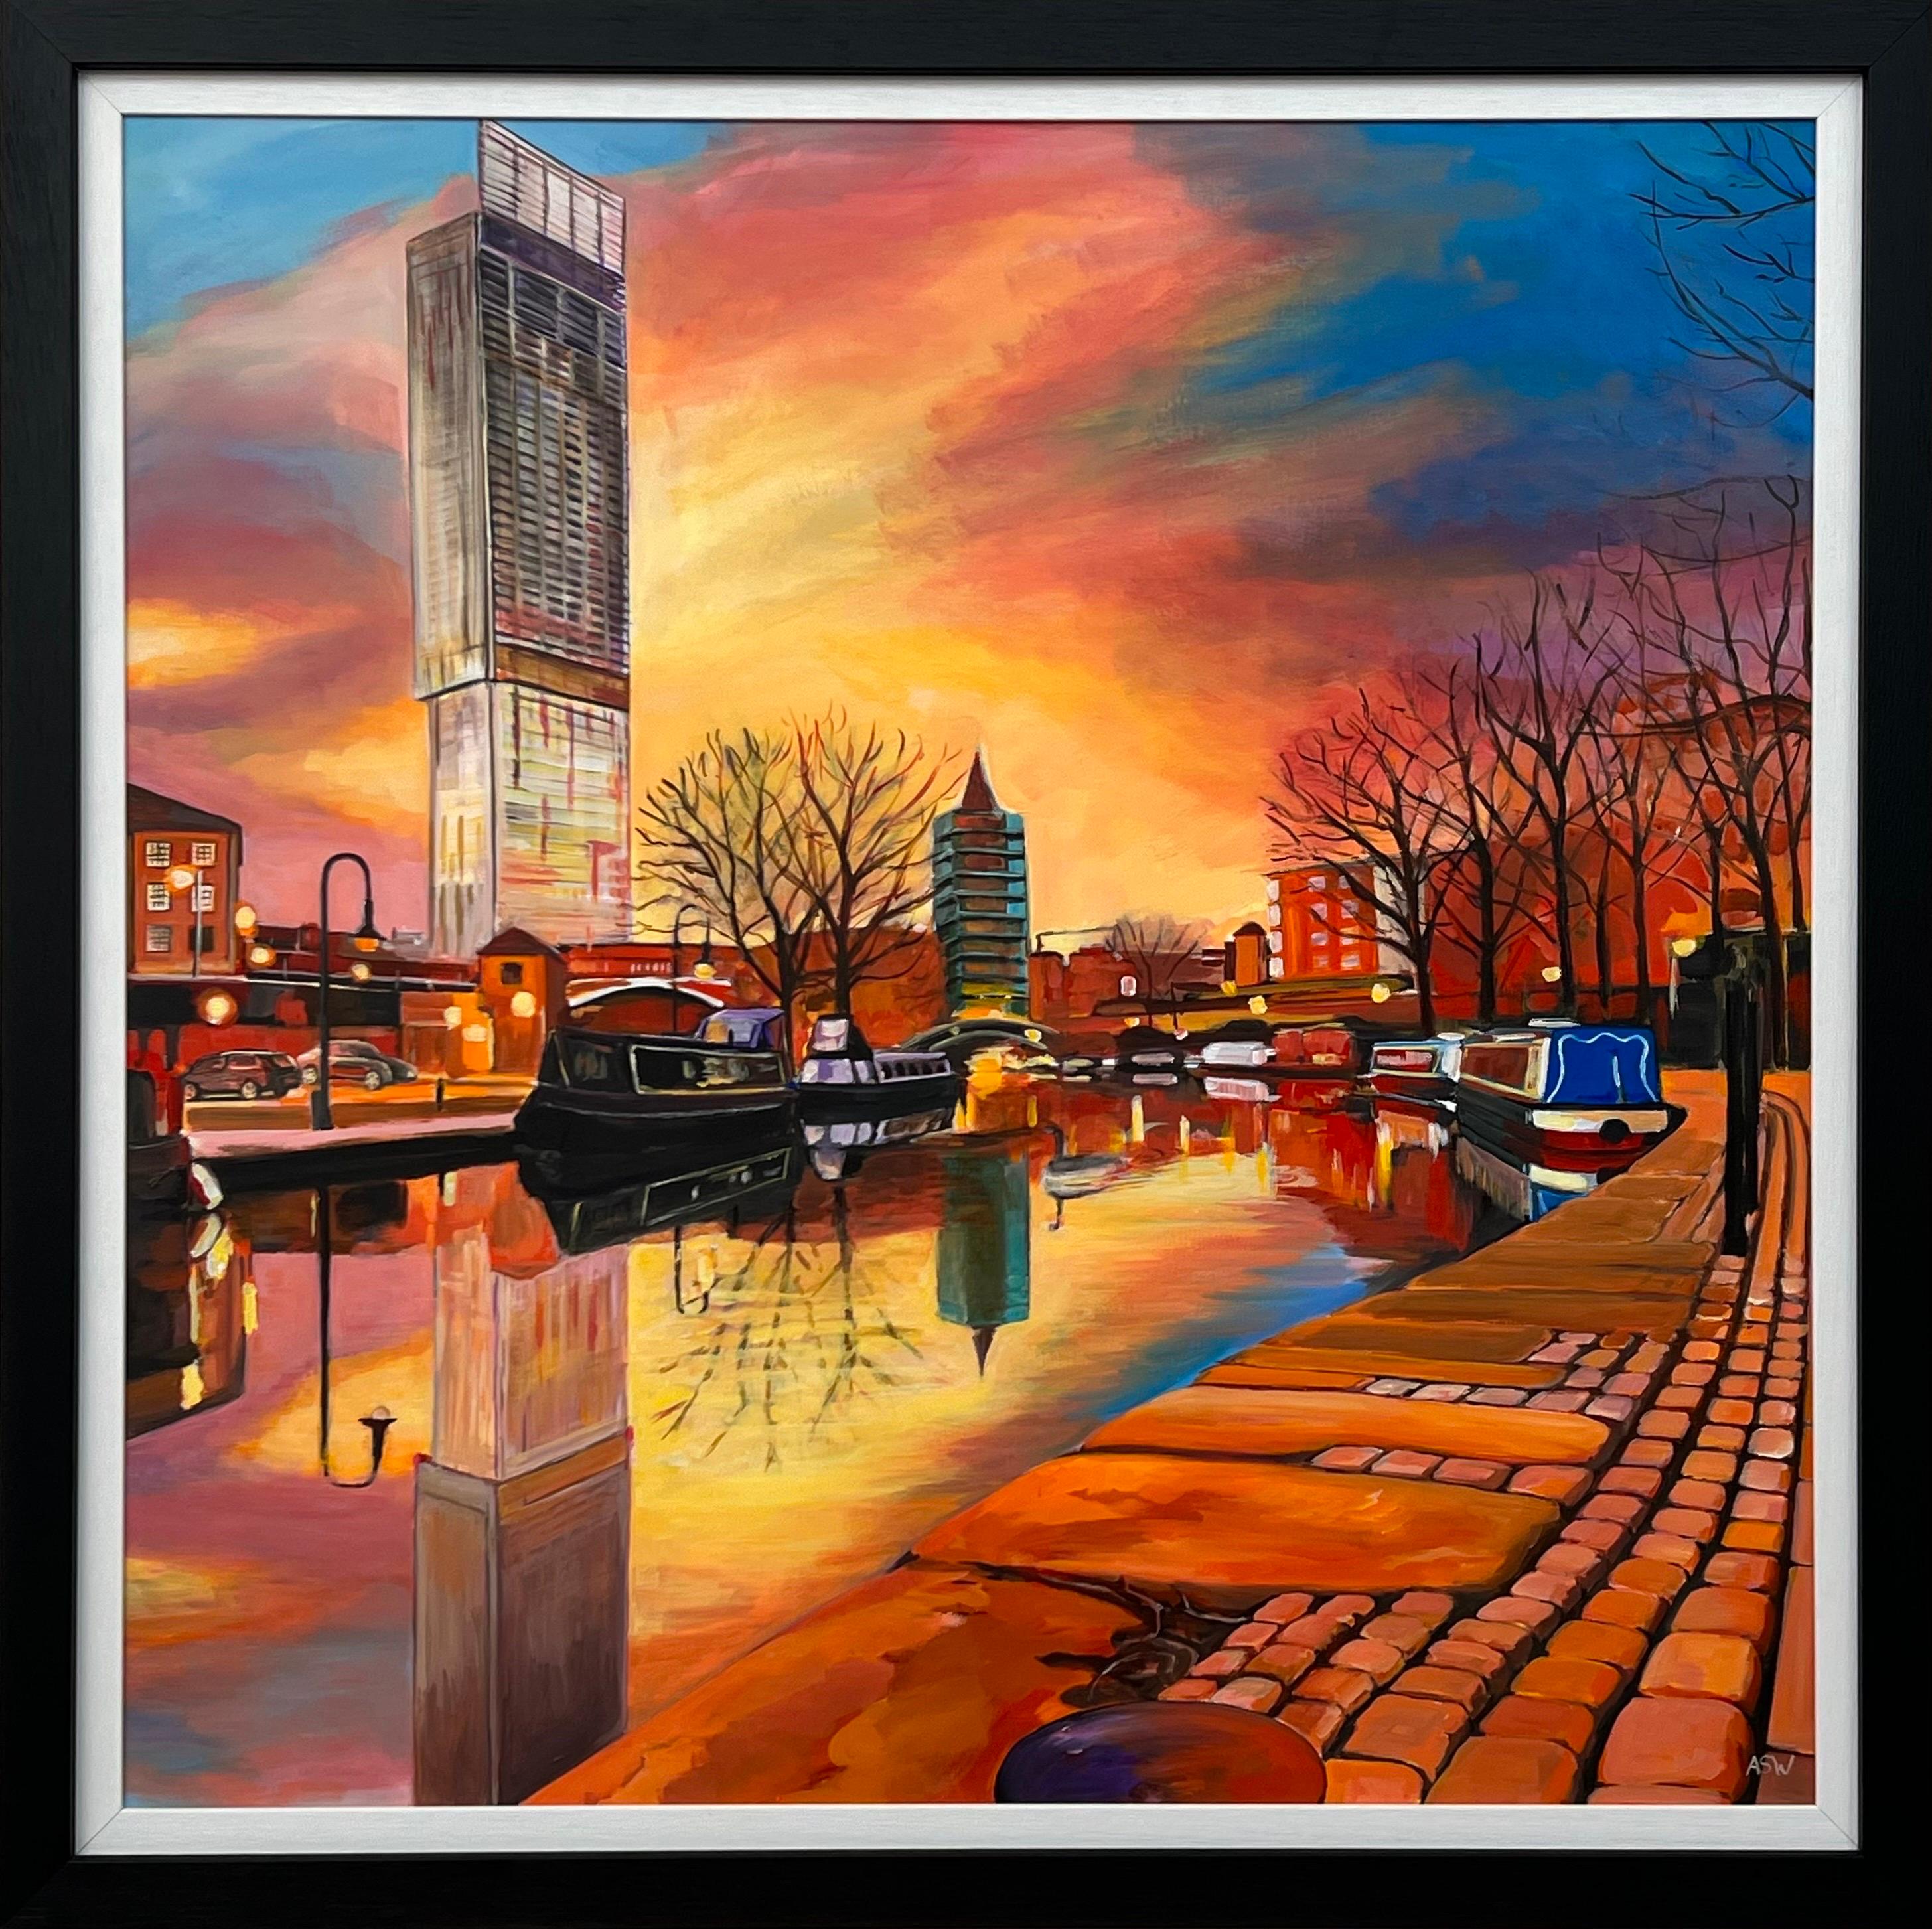 Angela Wakefield Landscape Painting – Manchester Industrial City durch den Bridgewater-Kanal des zeitgenössischen britischen Künstlers